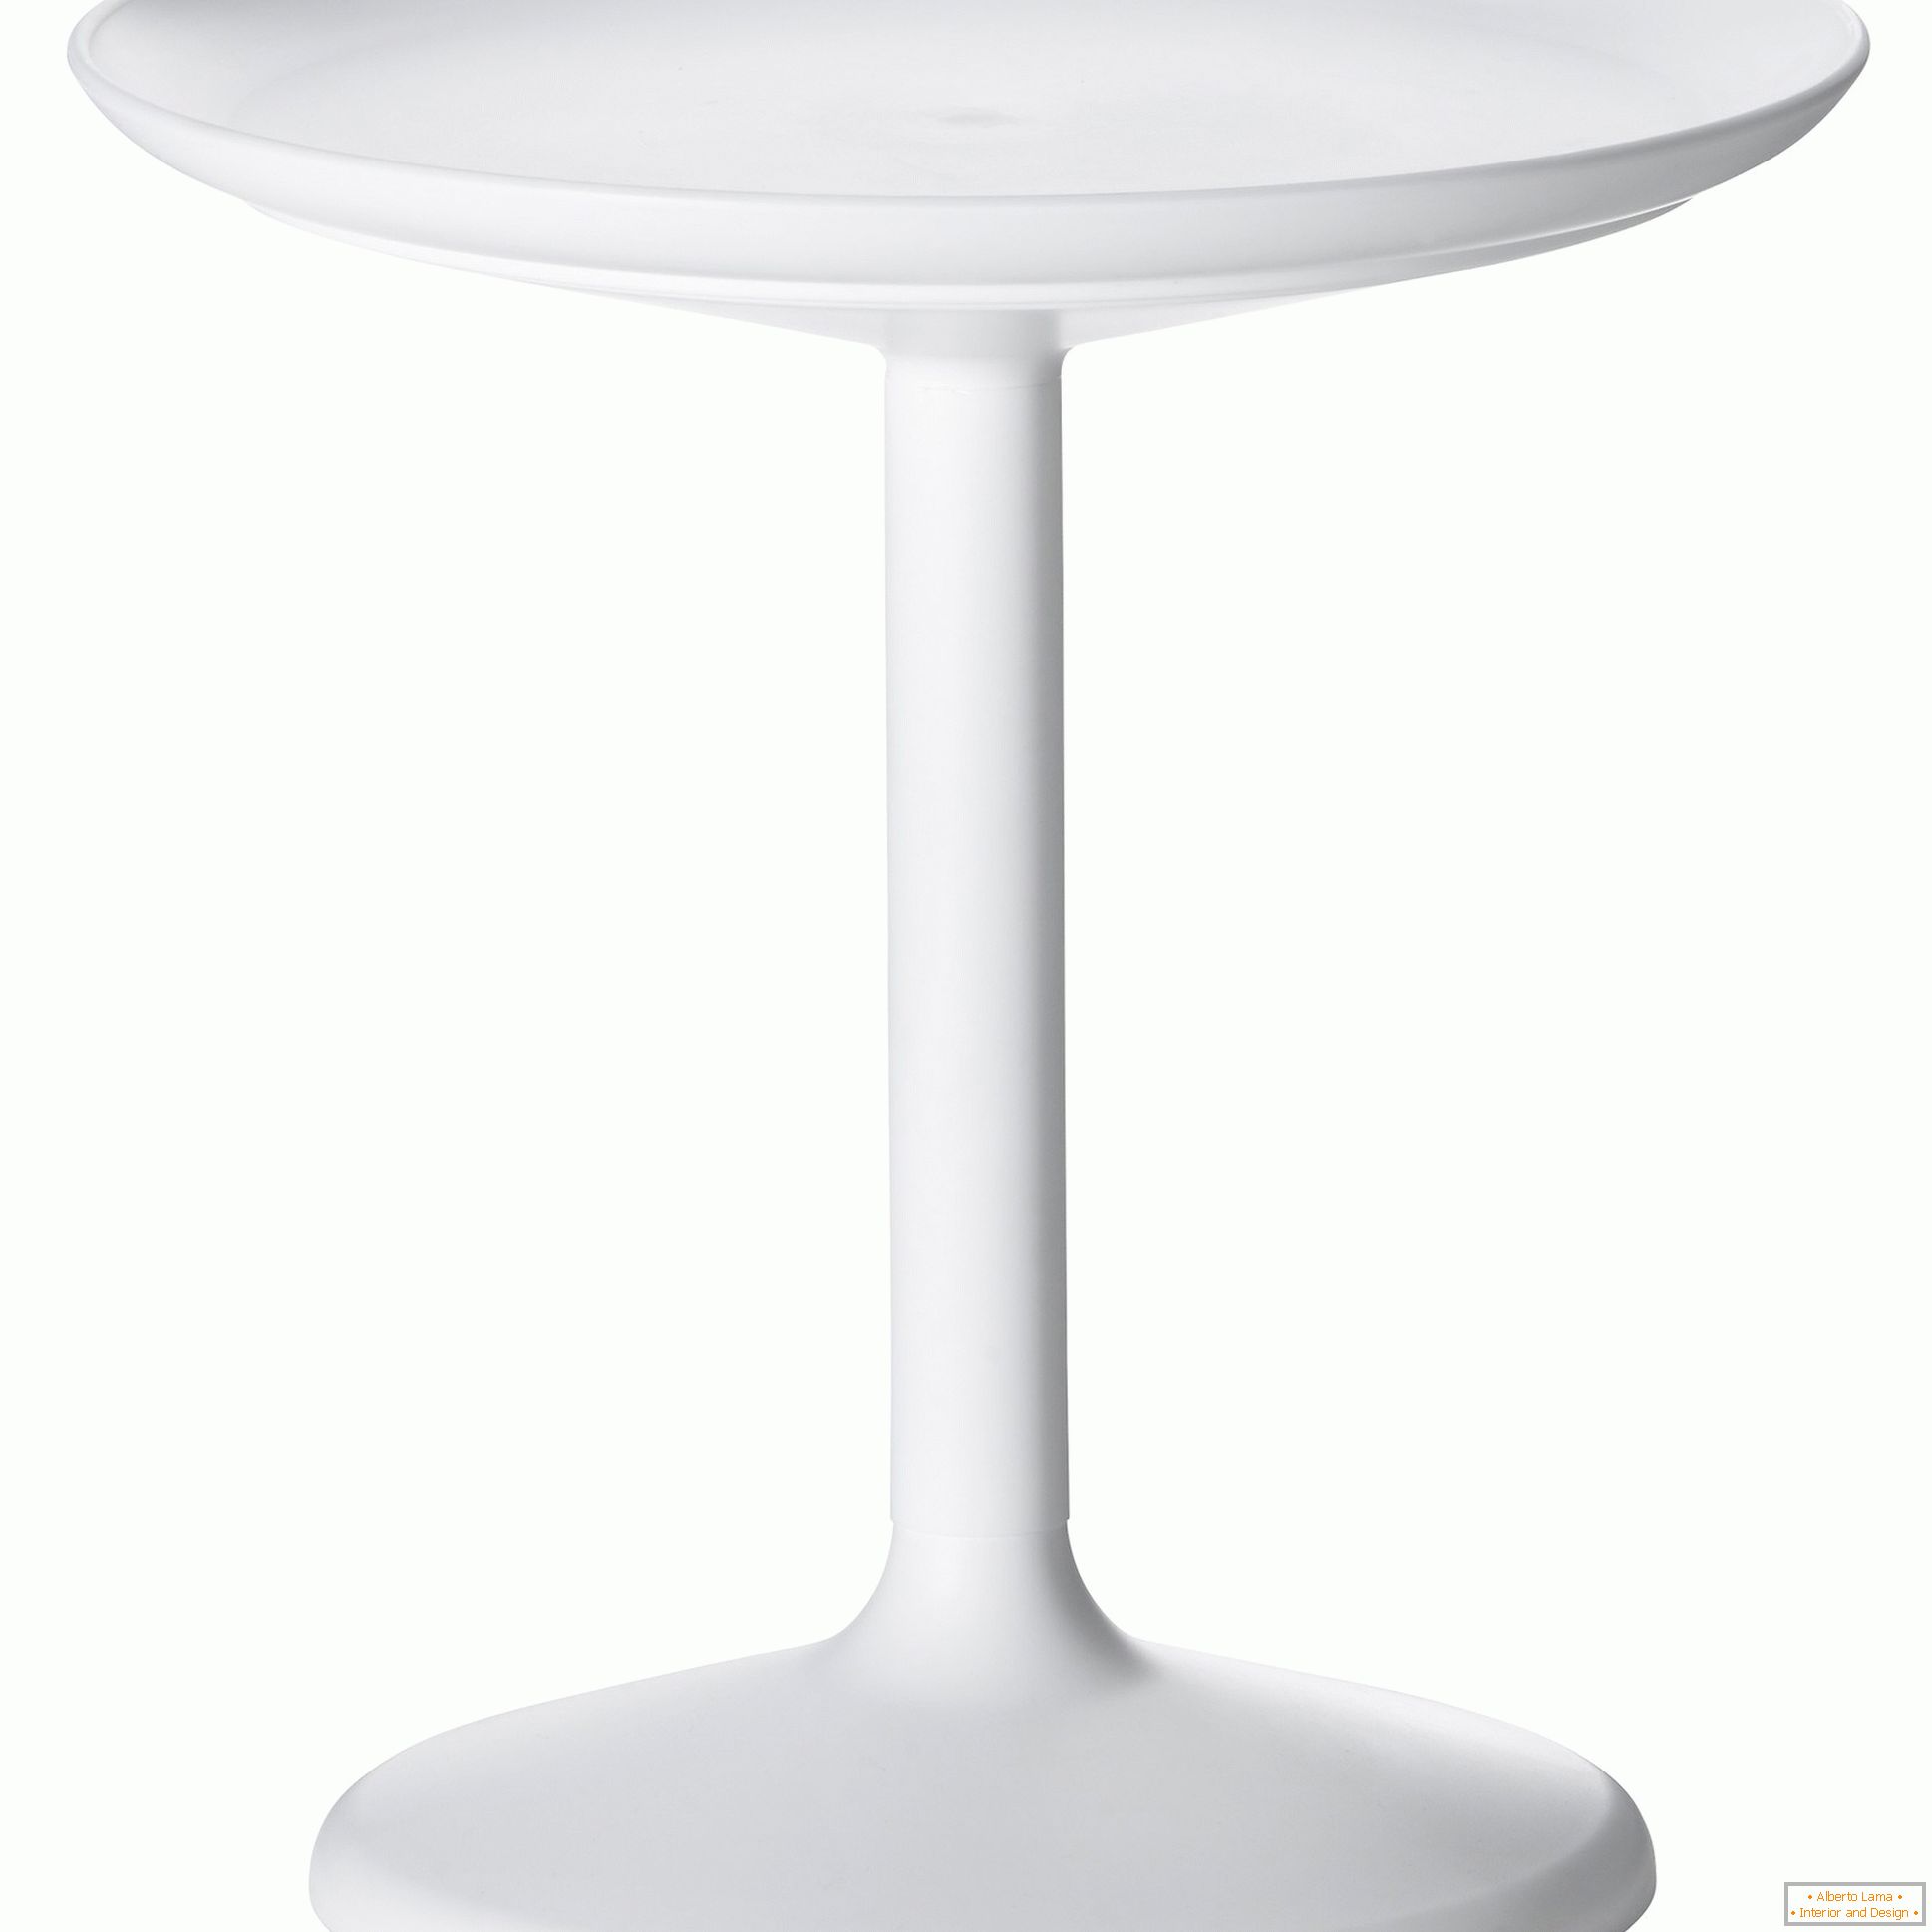 Table avec une base large et stable